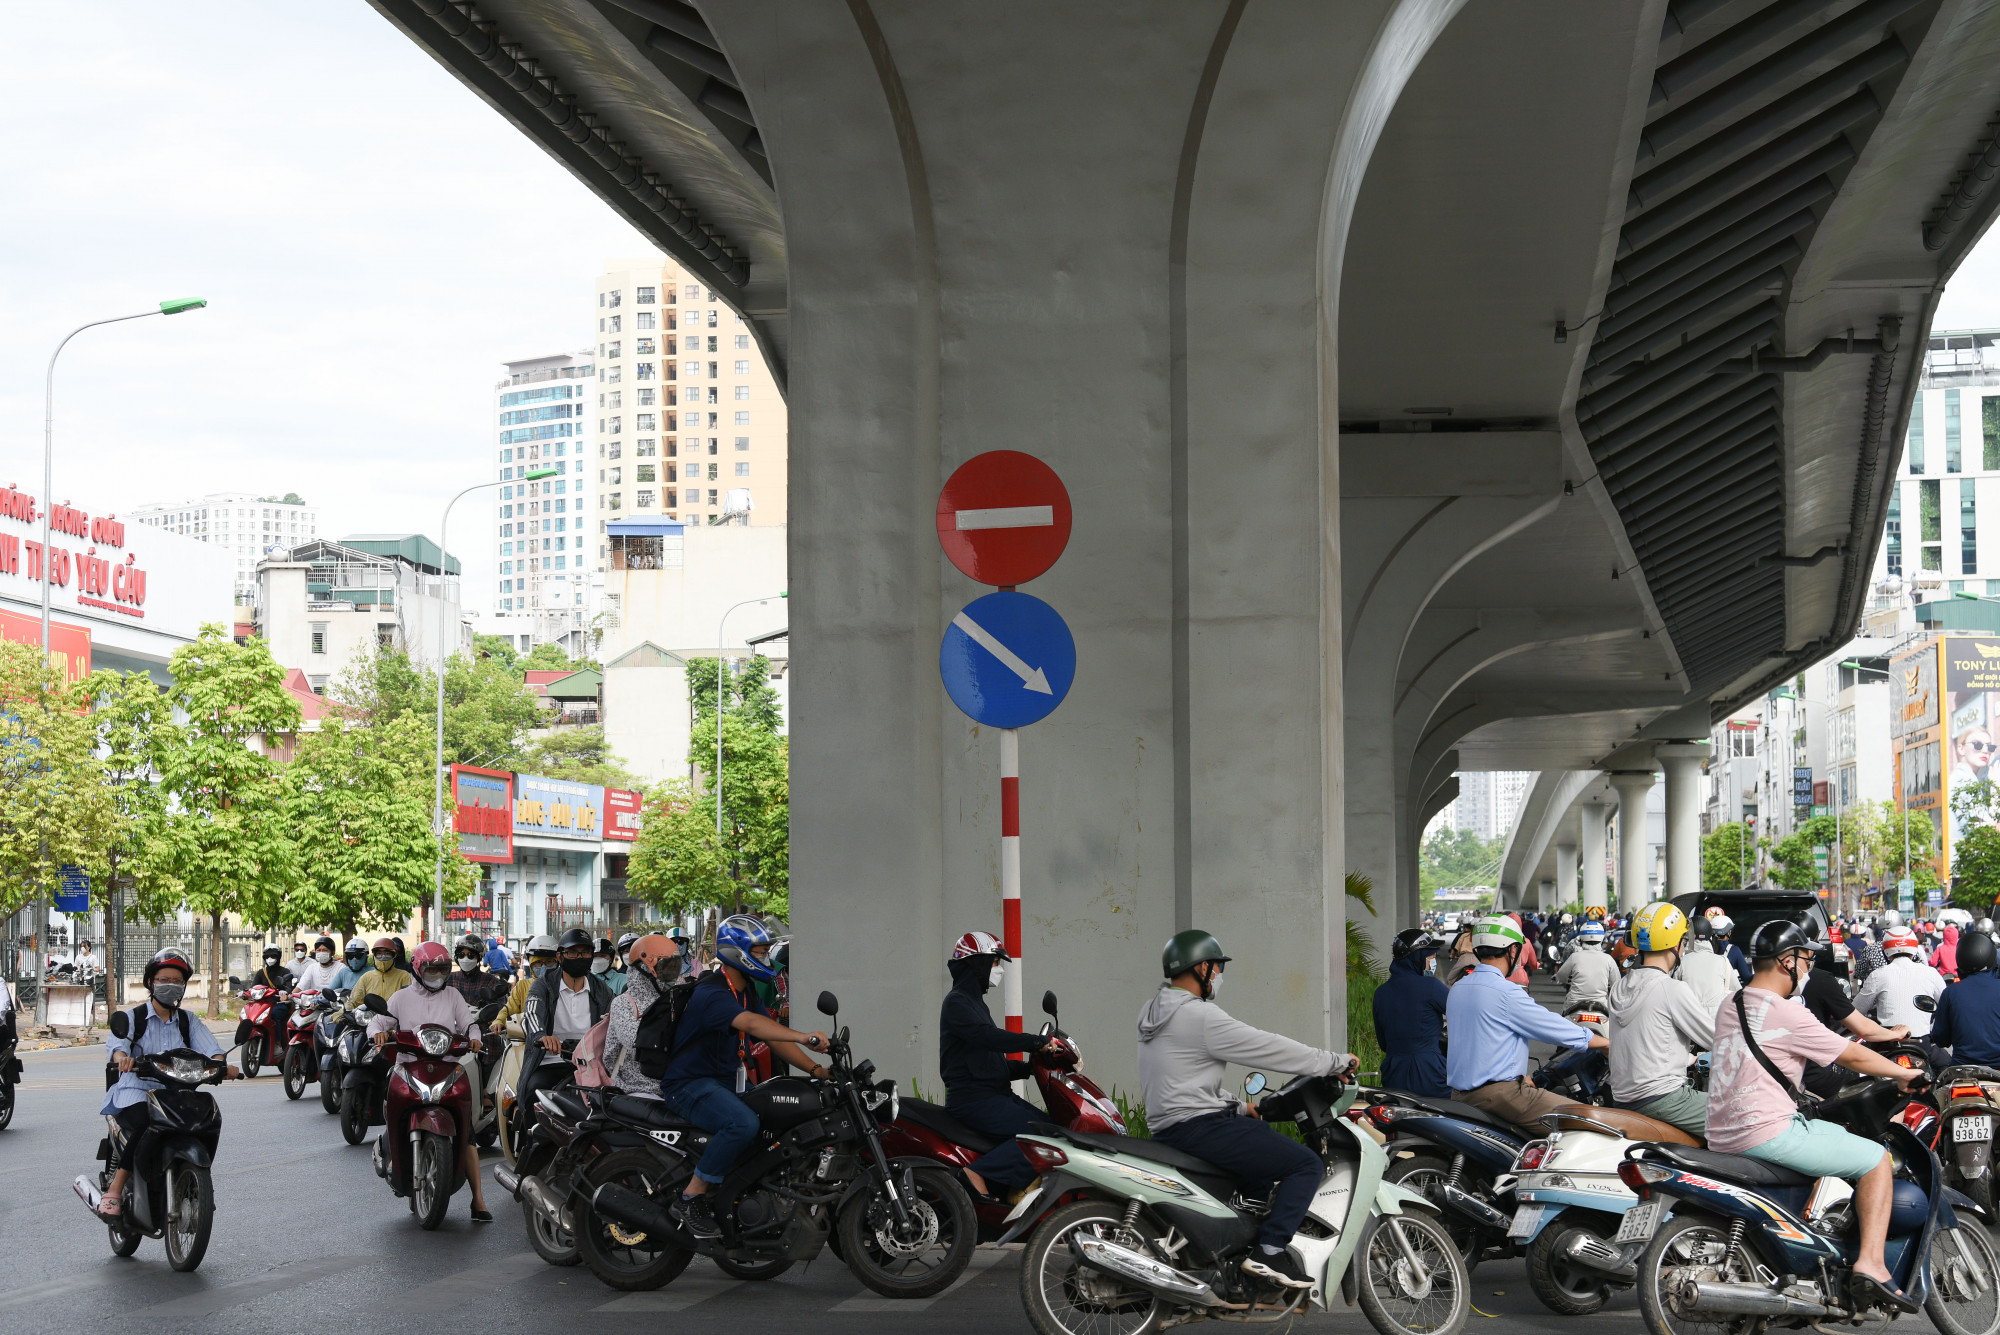 Tại điểm quay đầu trên đường Trường Chinh, đường thông thoáng, các phương tiện đi lại dễ dàng.